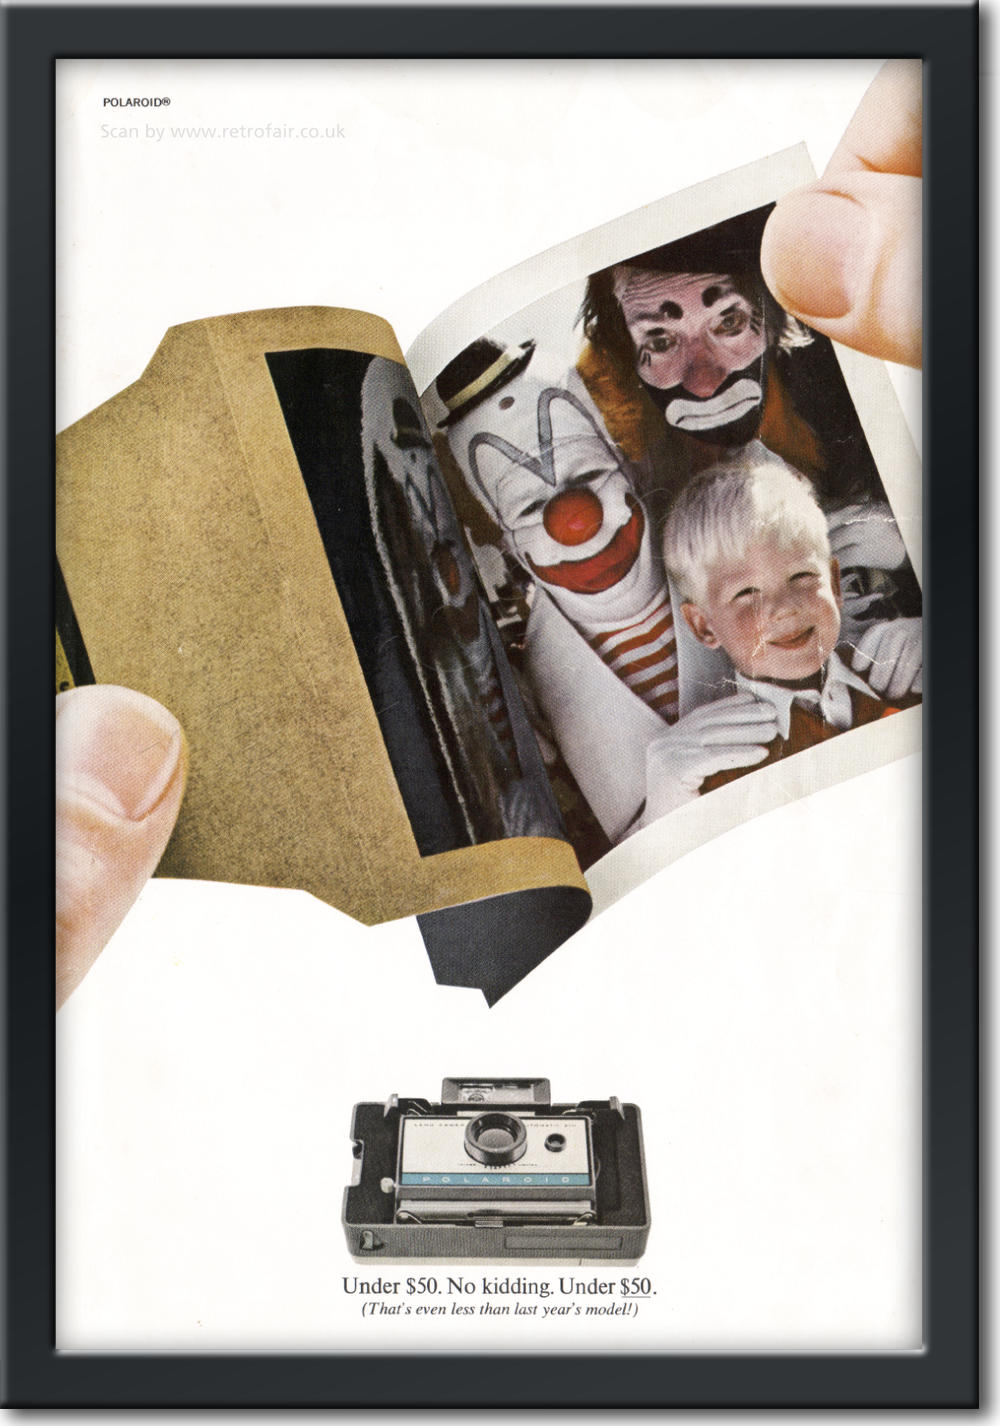  1967 Polaroid Cameras - framed preview retro